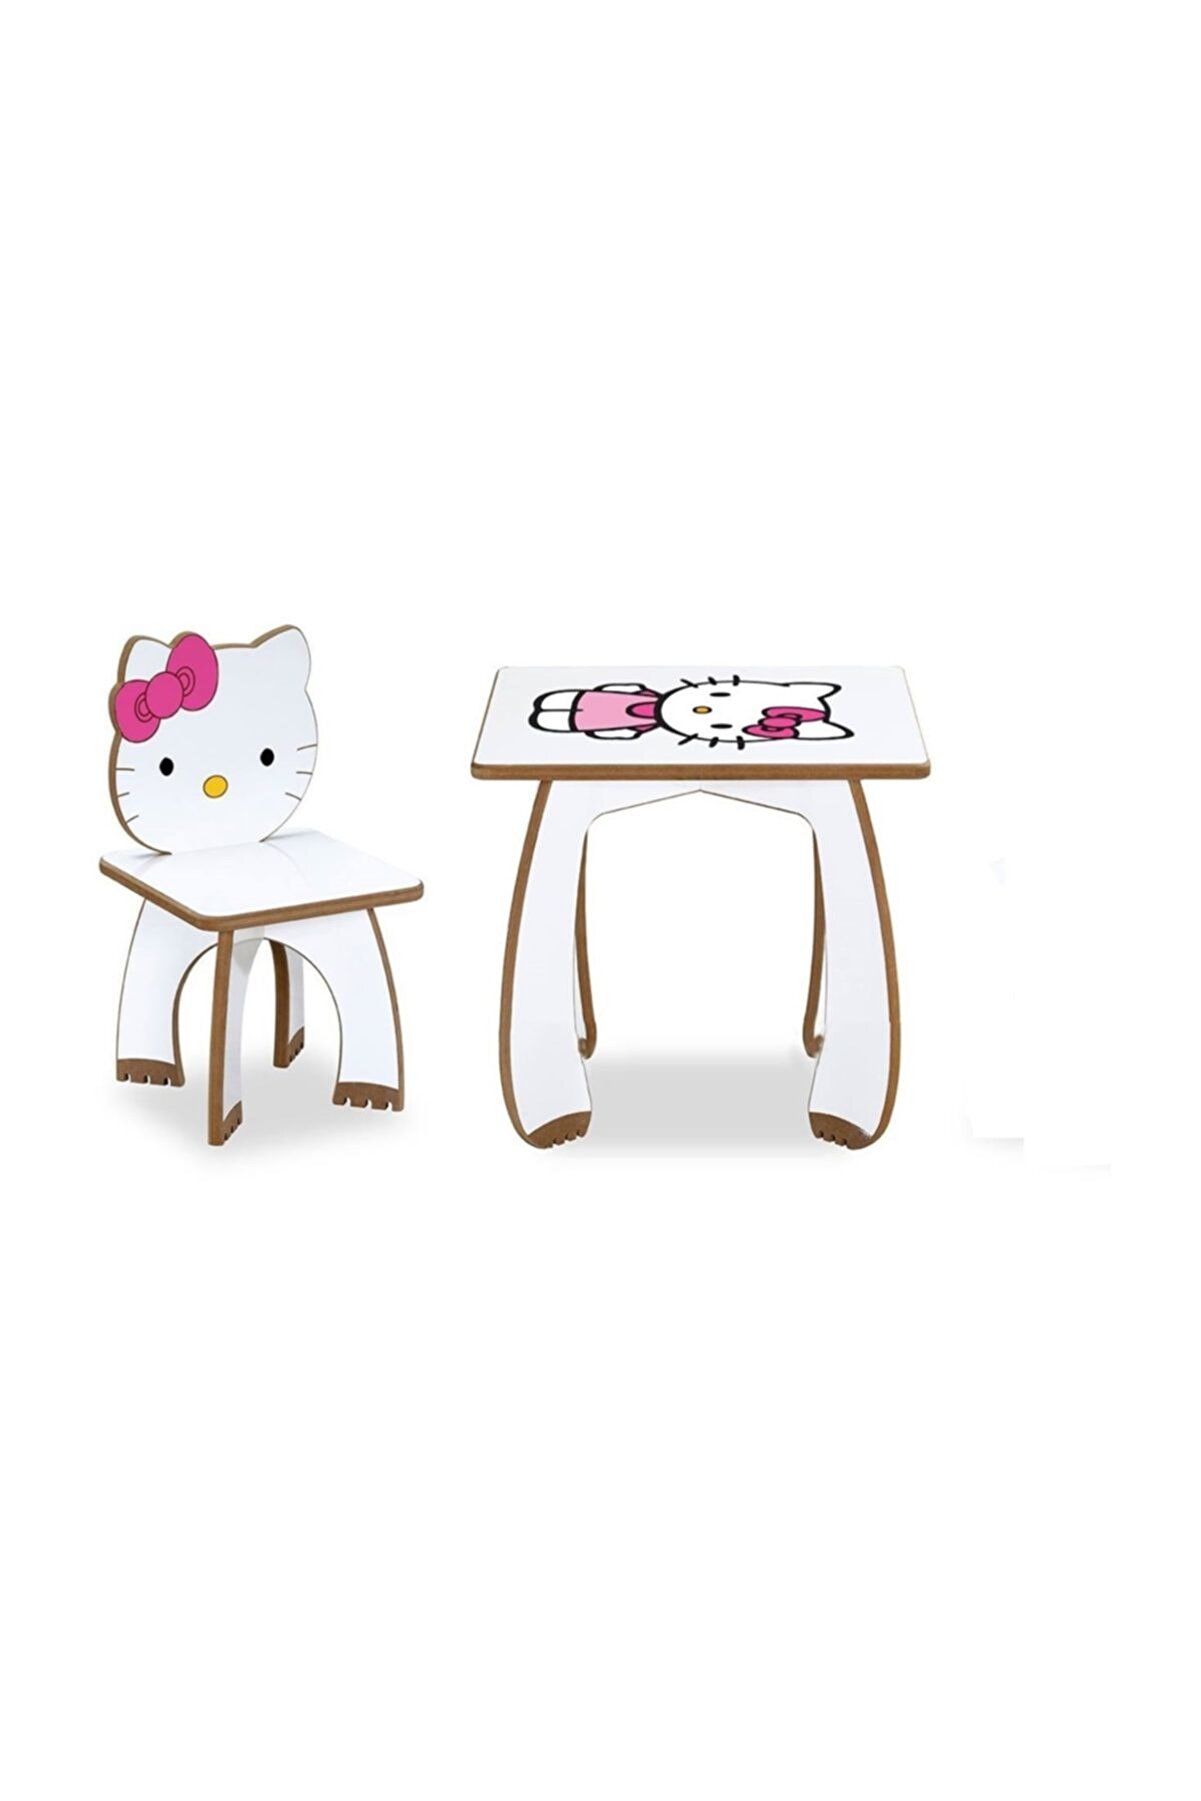 Asrimo mobilya Çocuk Masa Sandalye Takımı  Hello Kitty 1 Sandalye 1 Masa Set Çocuk Masası Çocuk Sandalyesi